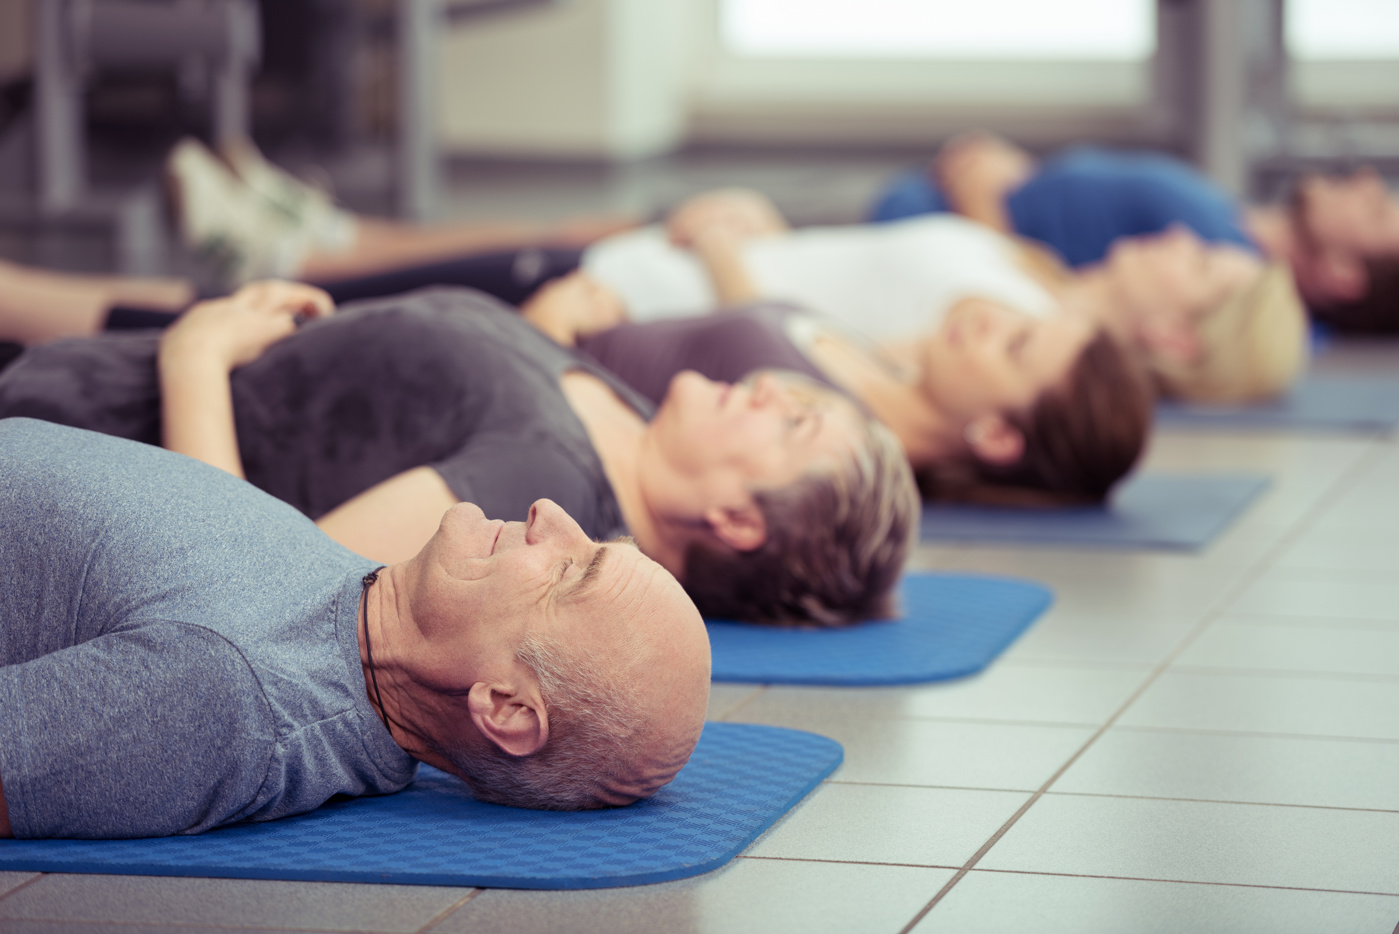 Teilnehmer und Teilnehmerinnen praktizieren nach dem Workout Autogenes Training, um sich zu entspannen.